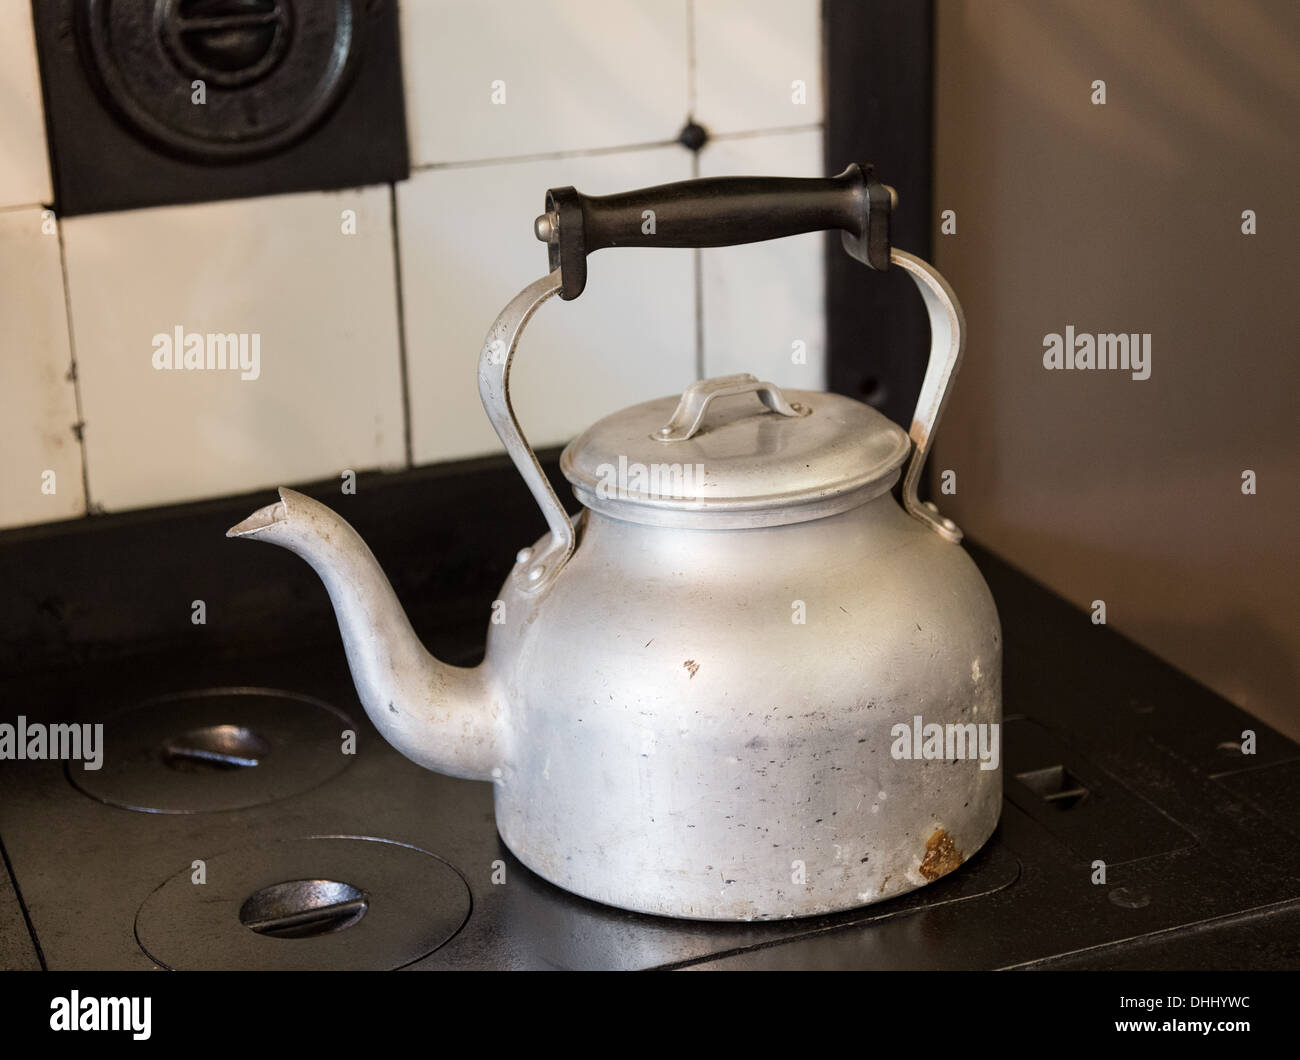 Hervidora de metal a la vieja usanza sentado en hierro fundido cocina vitrocerámica Foto de stock